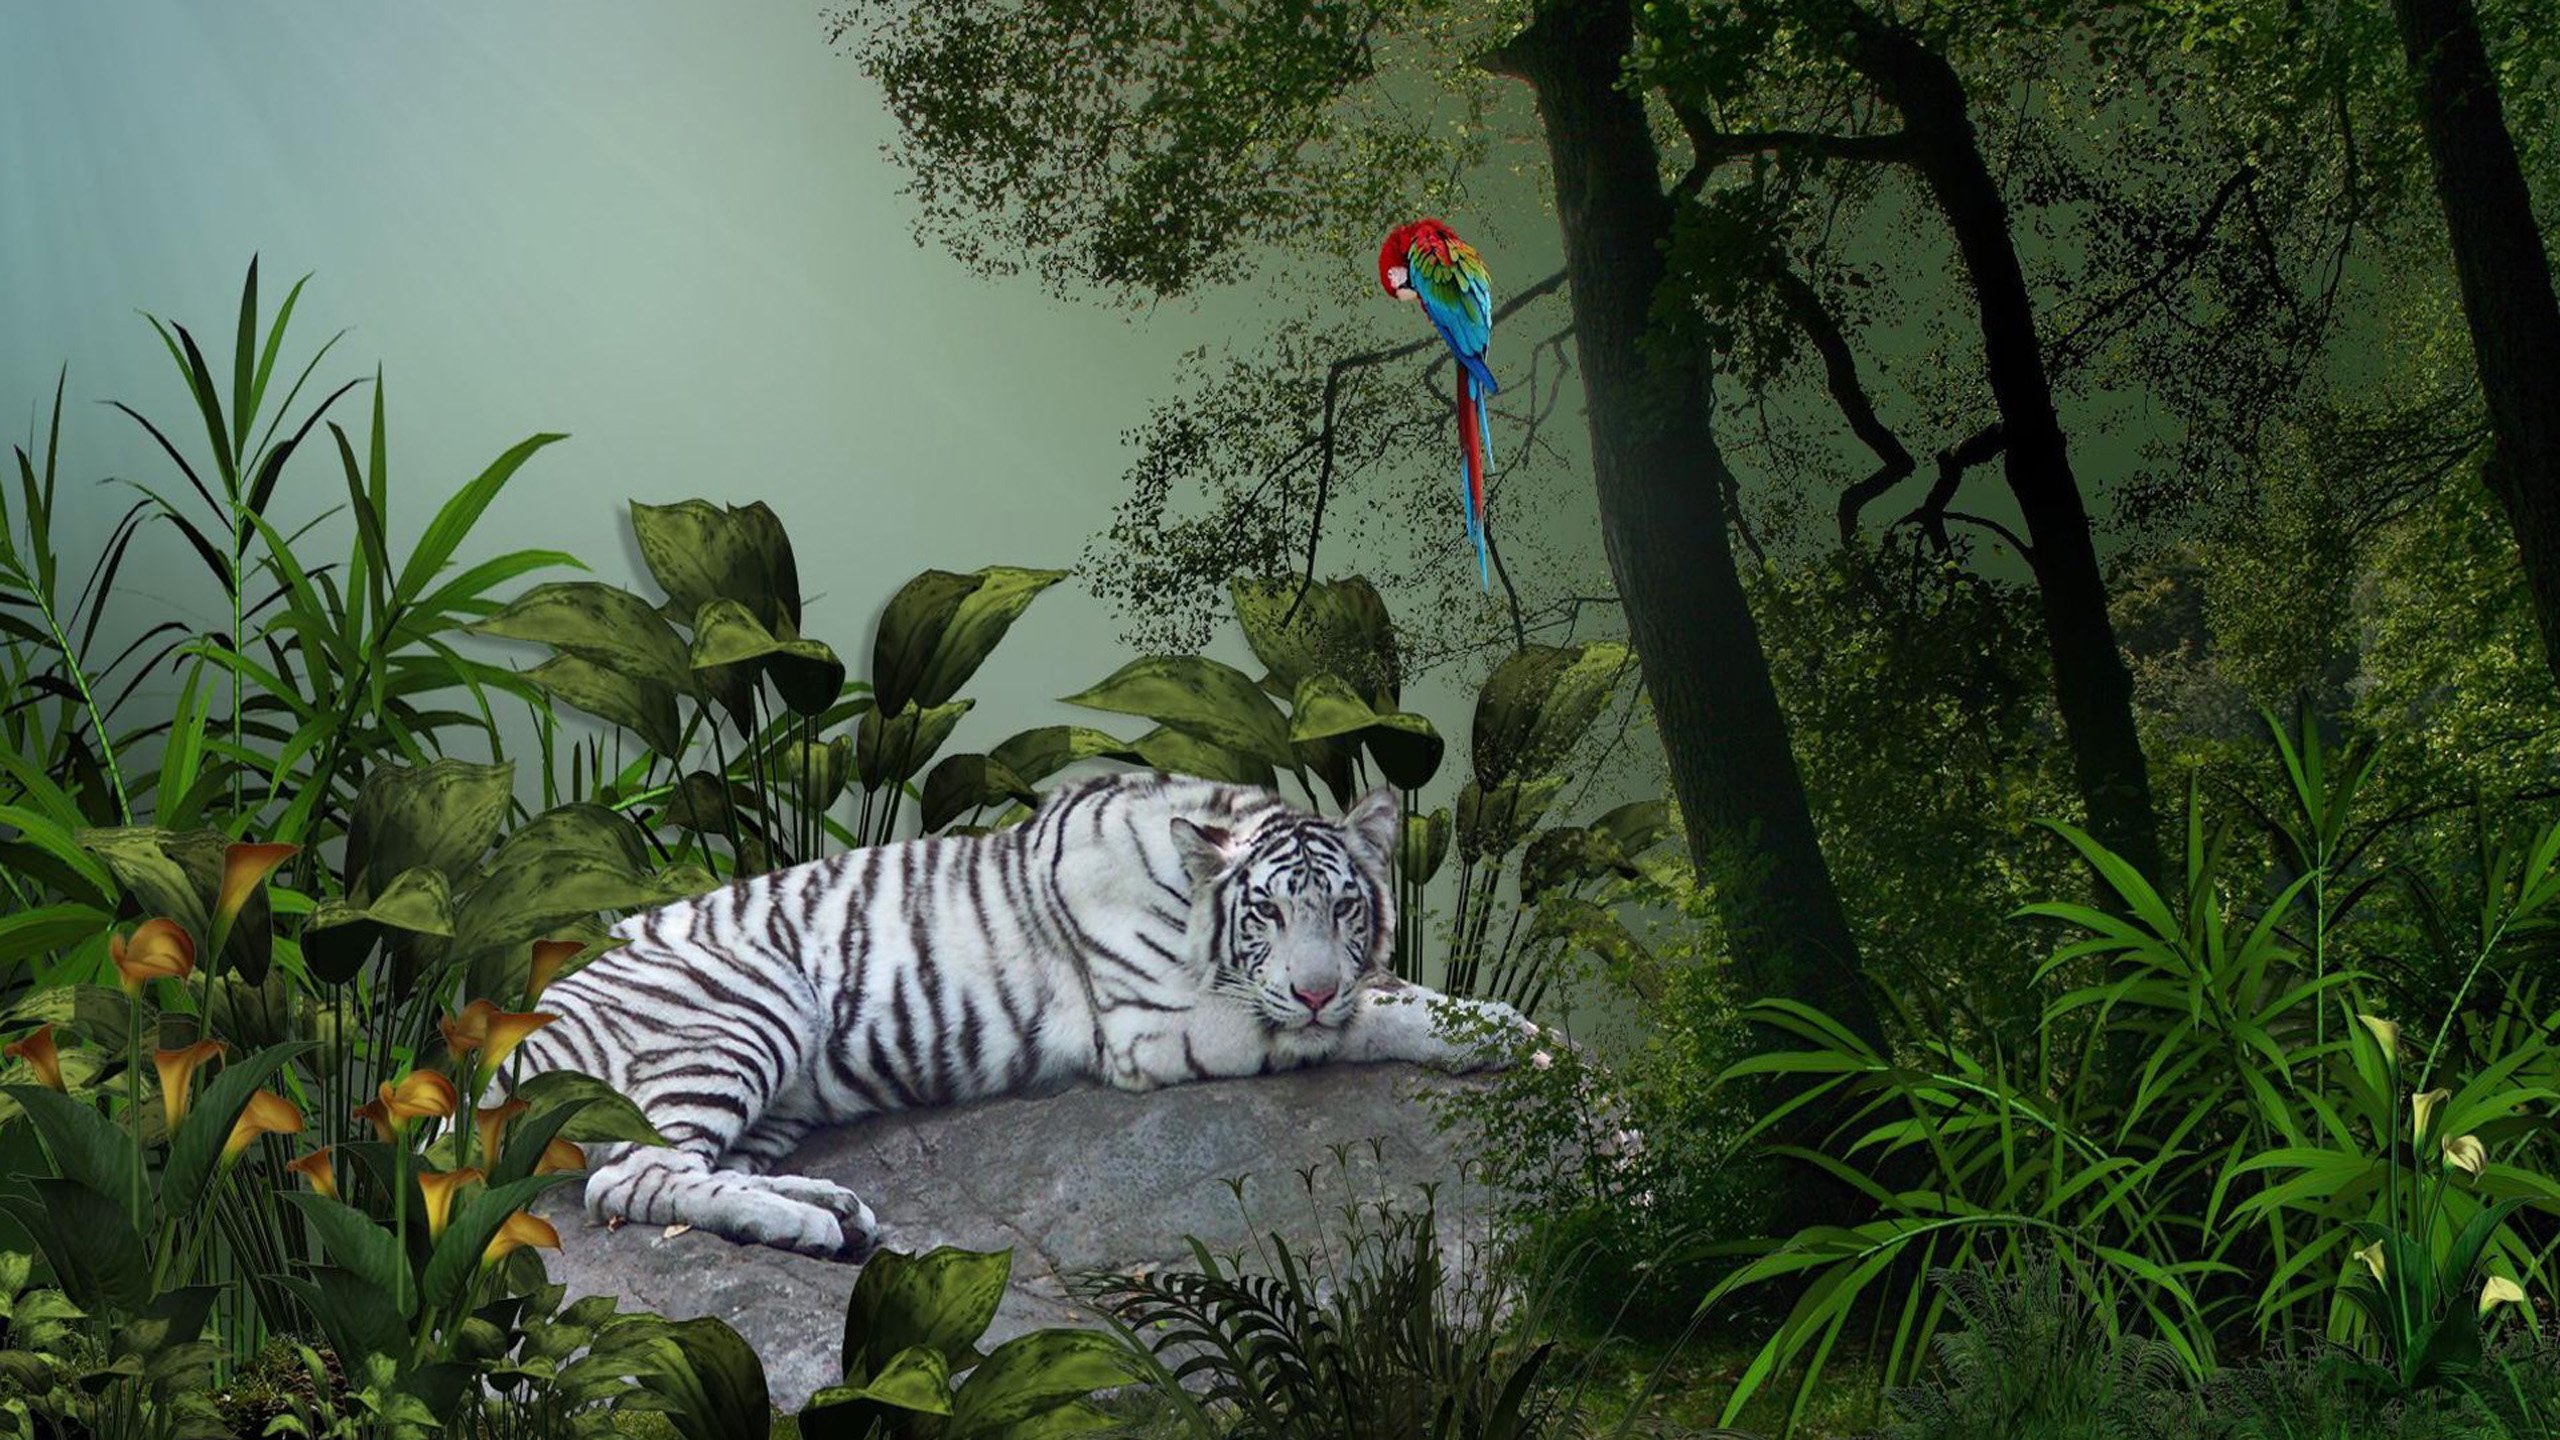 Jungle download. Обои джунгли. Животные джунглей. Тигр в джунглях. Фотообои с животными.